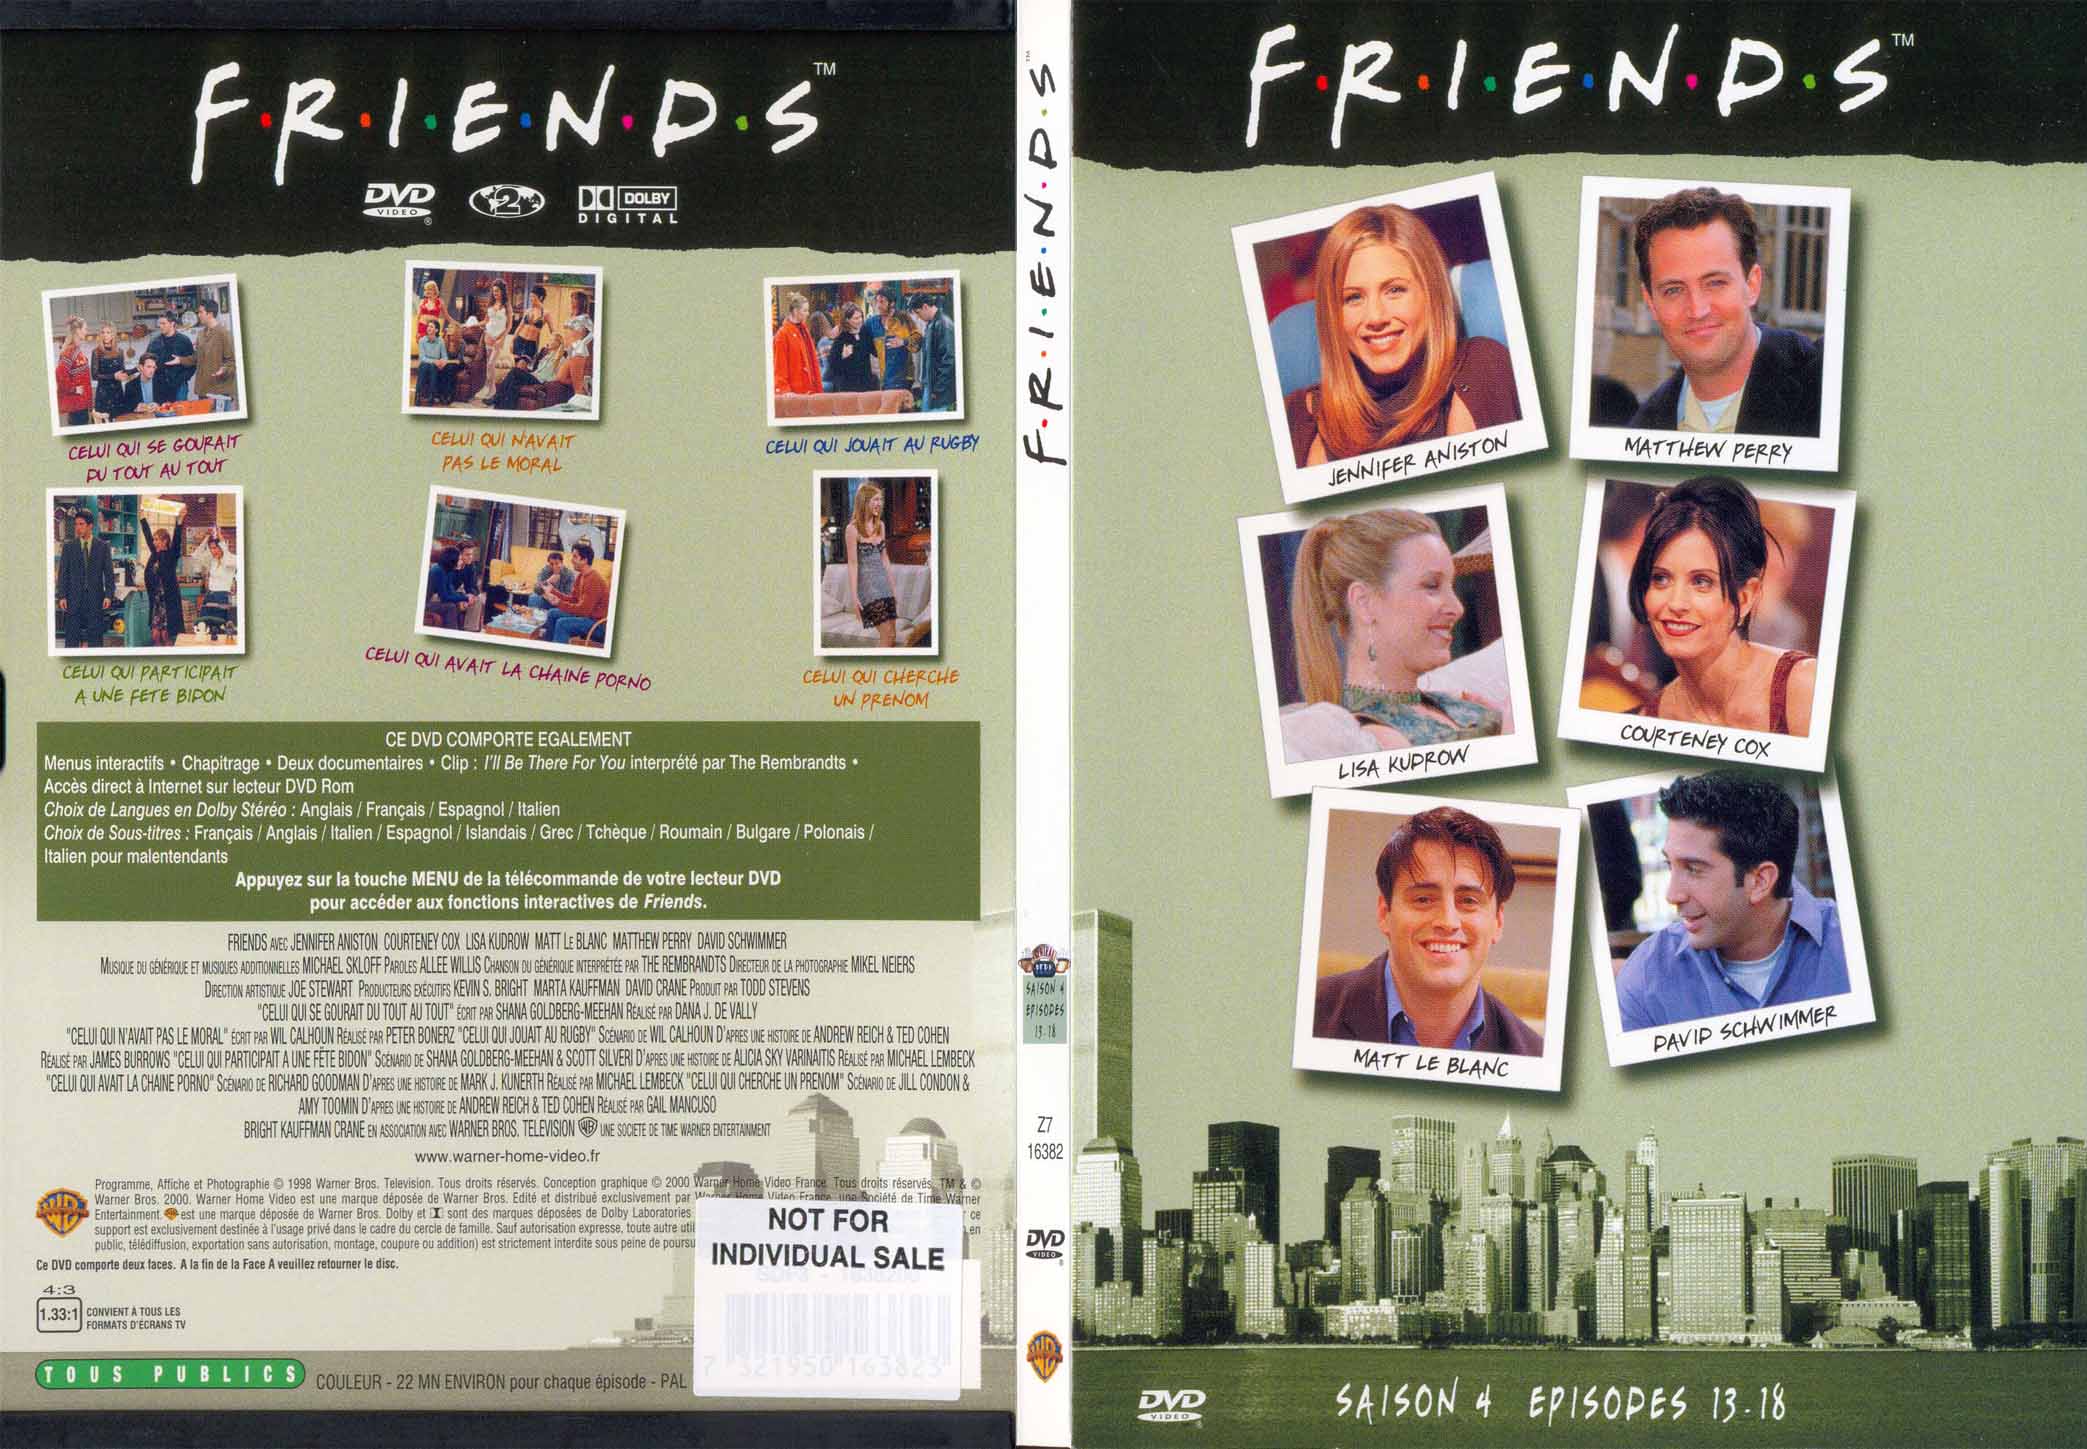 Jaquette DVD Friends saison 4 dvd 4 - SLIM